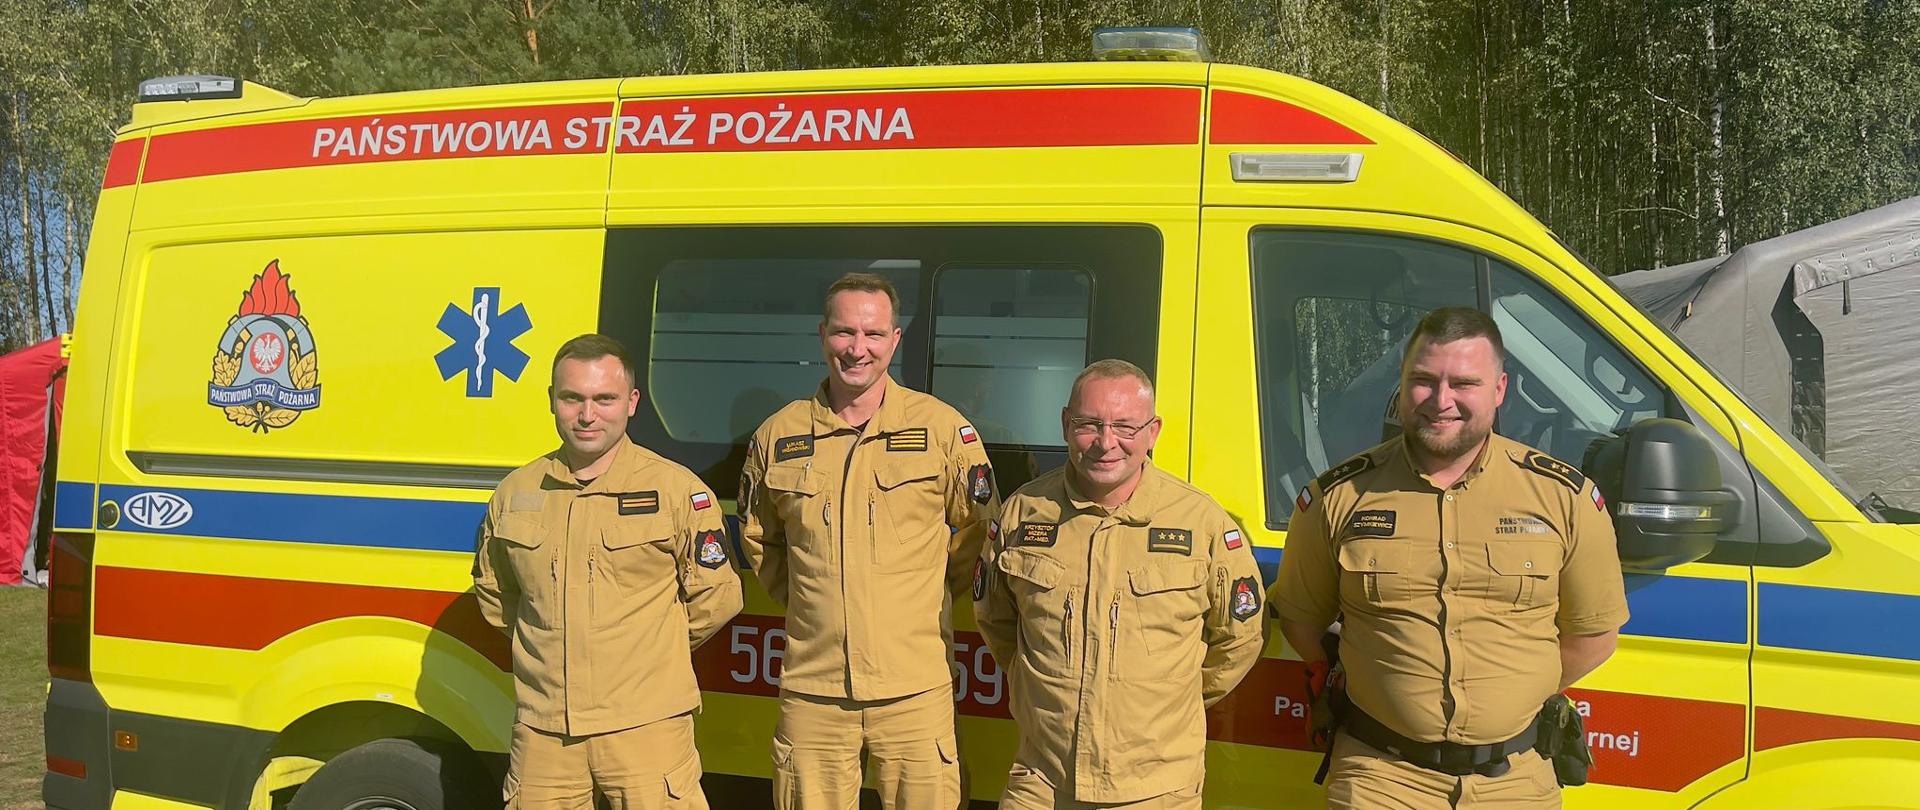 Przed żółtym ambulansem z napisem Państwowa Straż Pożarna stoi czterech mężczyzn ubranych w żółte mundury państwowej straży pożarnej